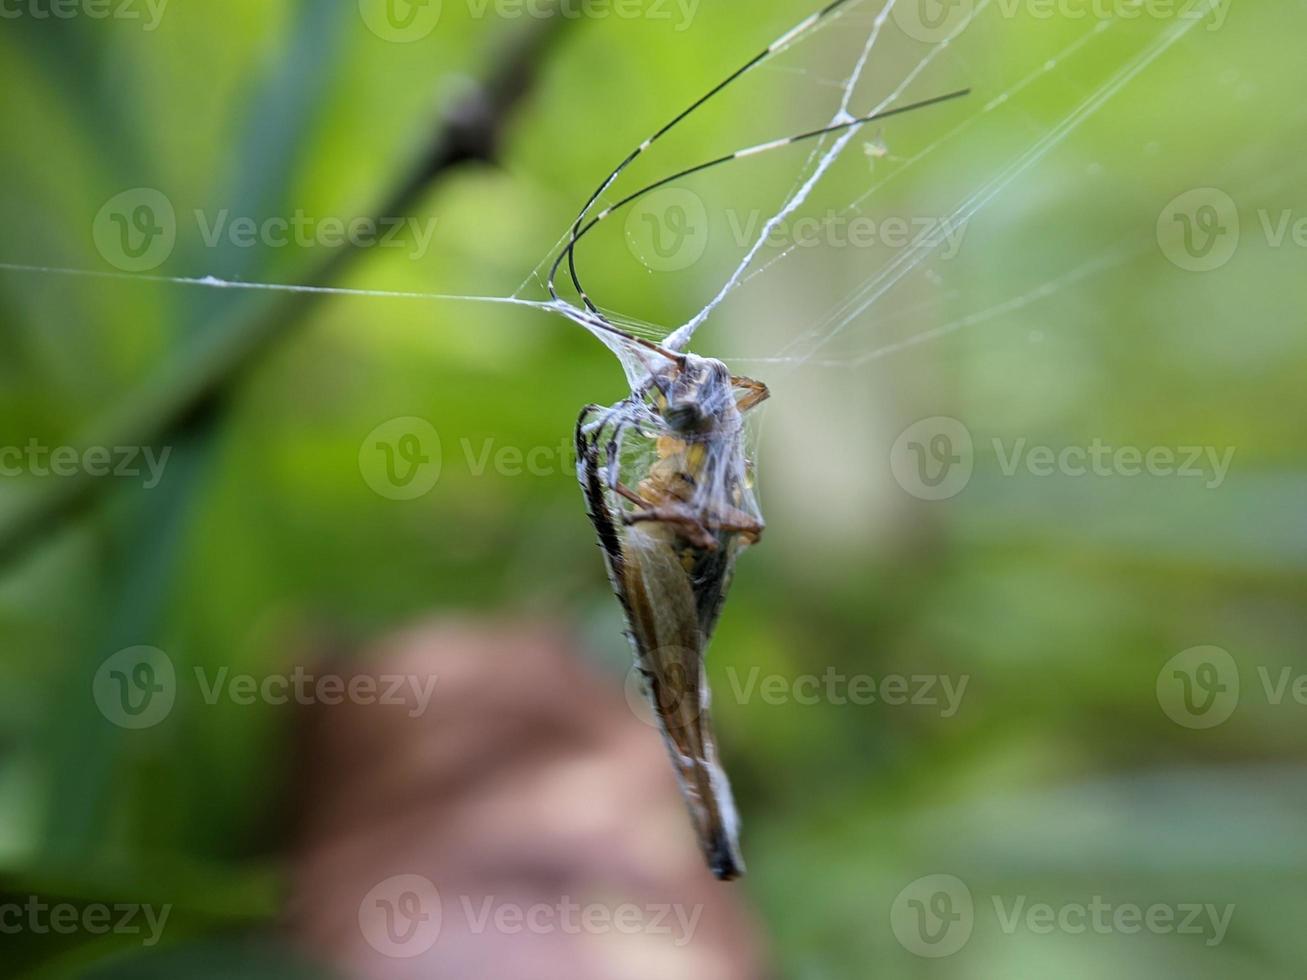 grasshopper trapped in cobweb in bush, macro photography photo